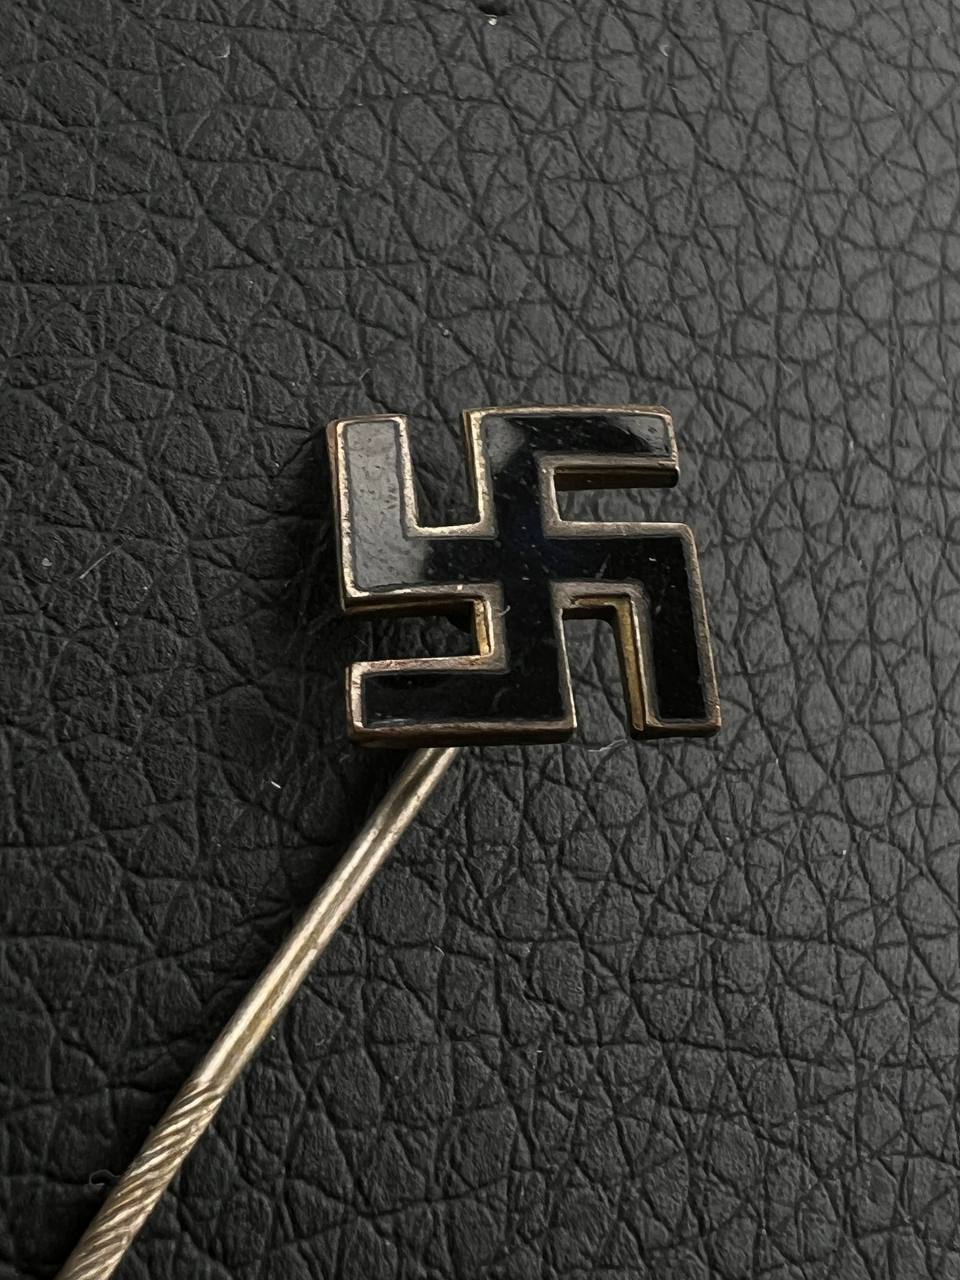 Знак фрачный, симпатизера НСДАП. Эмаль, 1930е Германия.